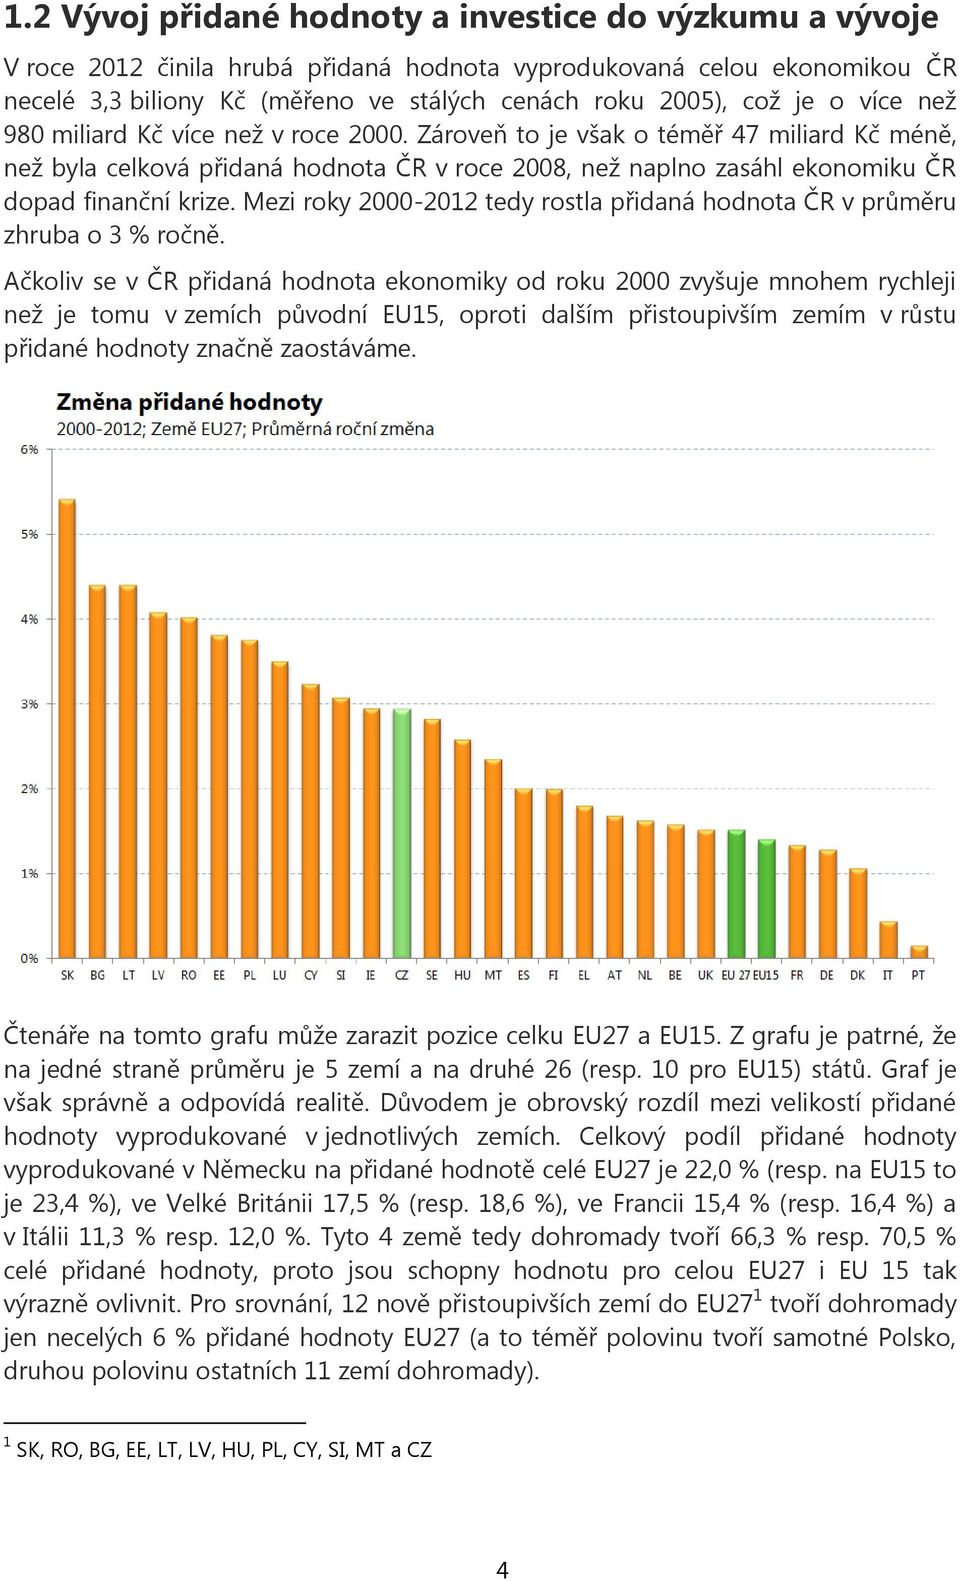 Mezi roky 2000-2012 tedy rostla přidaná hodnota ČR v průměru zhruba o 3 % ročně.